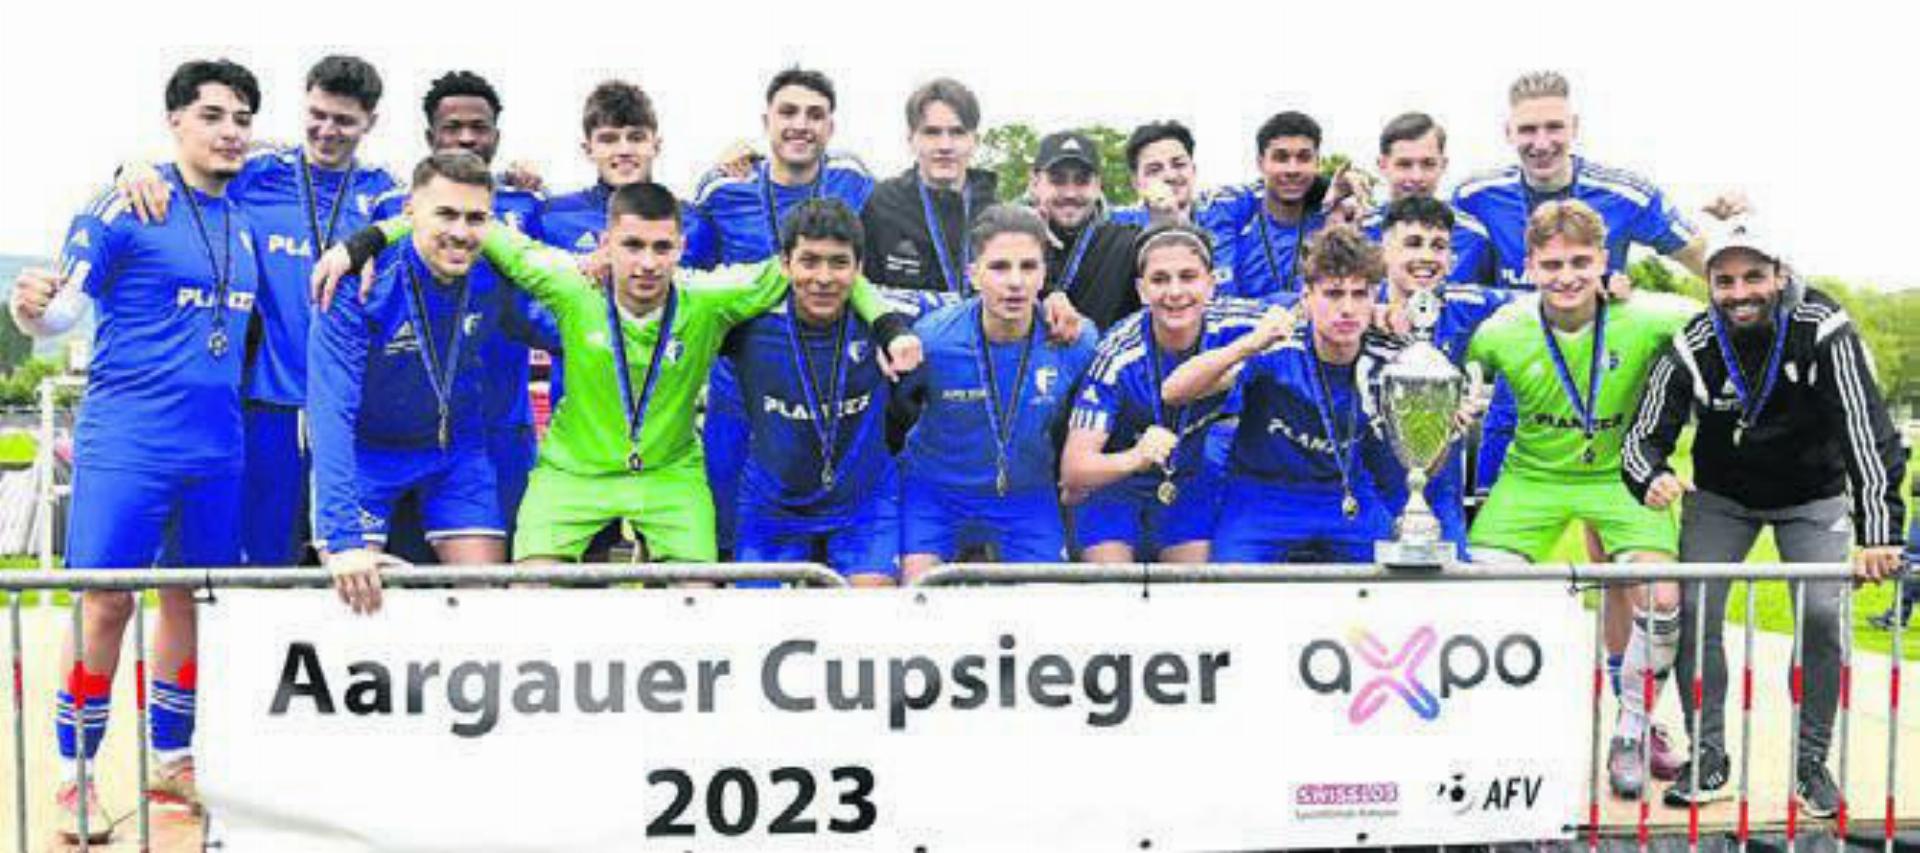 Die A-Junioren des FC Wohlen sind ebenfalls Cupsieger. Bild: awa